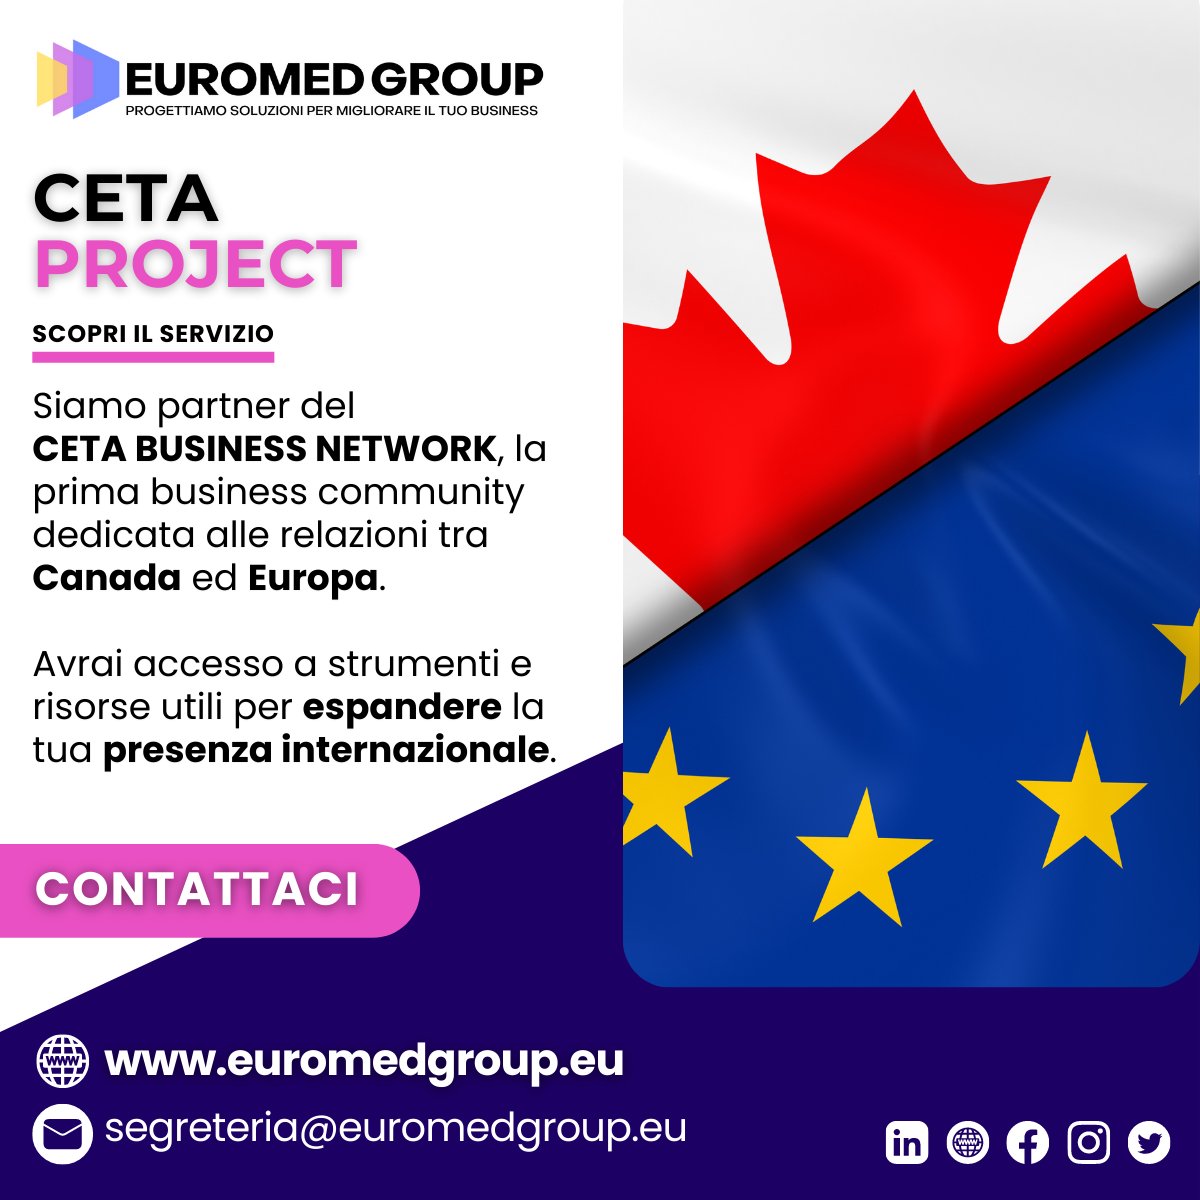 Il progetto #CETABusinessNetwork può aiutarti a raggiungere i tuoi obiettivi! Ti forniremo tutti gli strumenti necessari per accedere al mercato canadese in modo affidabile ed efficace.
euromedgroup.eu/servizi/ceta-p…

#EuromedGroup #CETA #CETABusinessNetwork